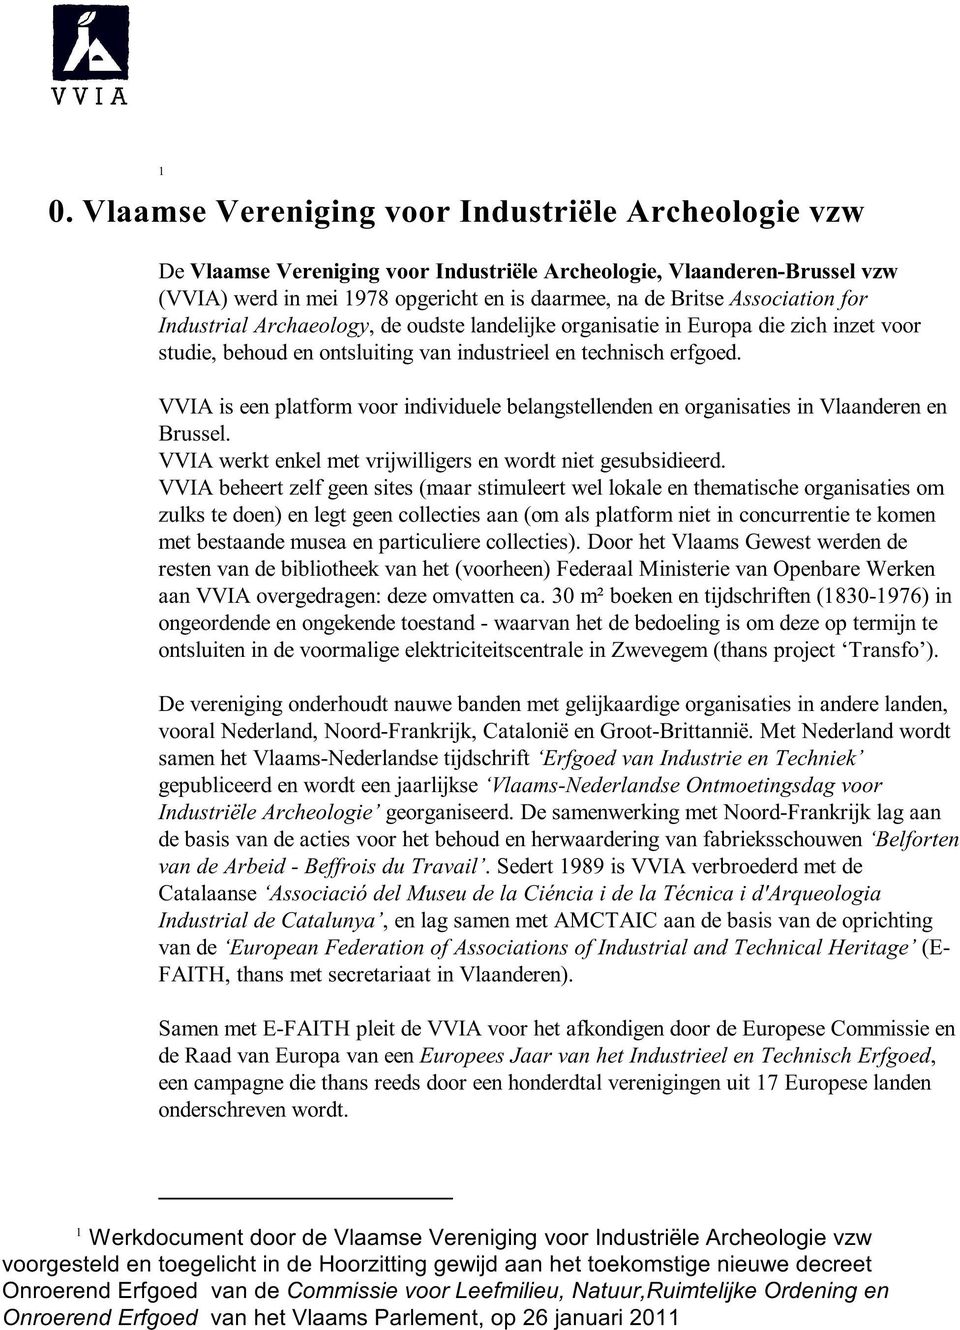 VVIA is een platform voor individuele belangstellenden en organisaties in Vlaanderen en Brussel. VVIA werkt enkel met vrijwilligers en wordt niet gesubsidieerd.